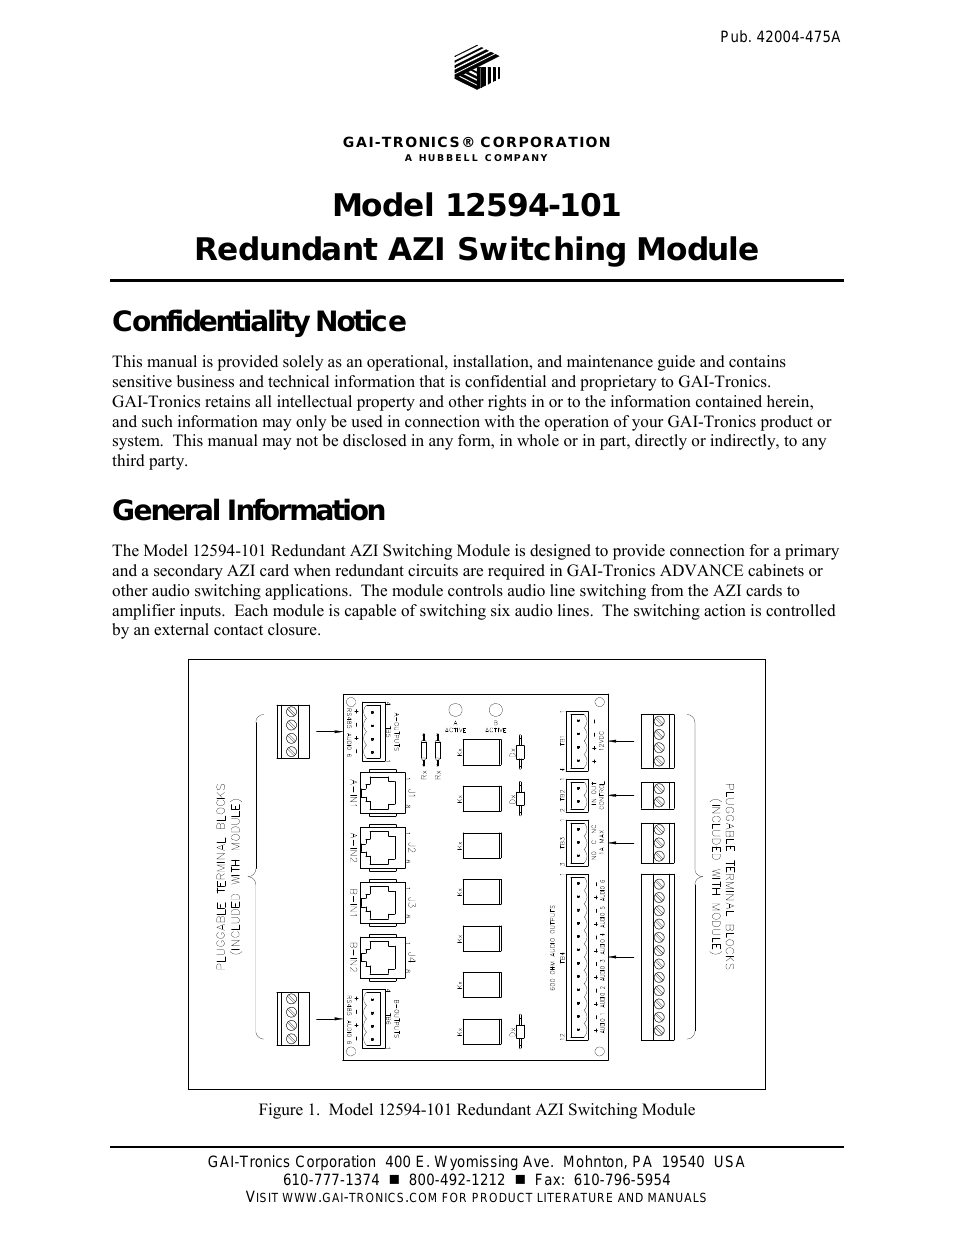 12594-101 Redundant AZI Switching Module